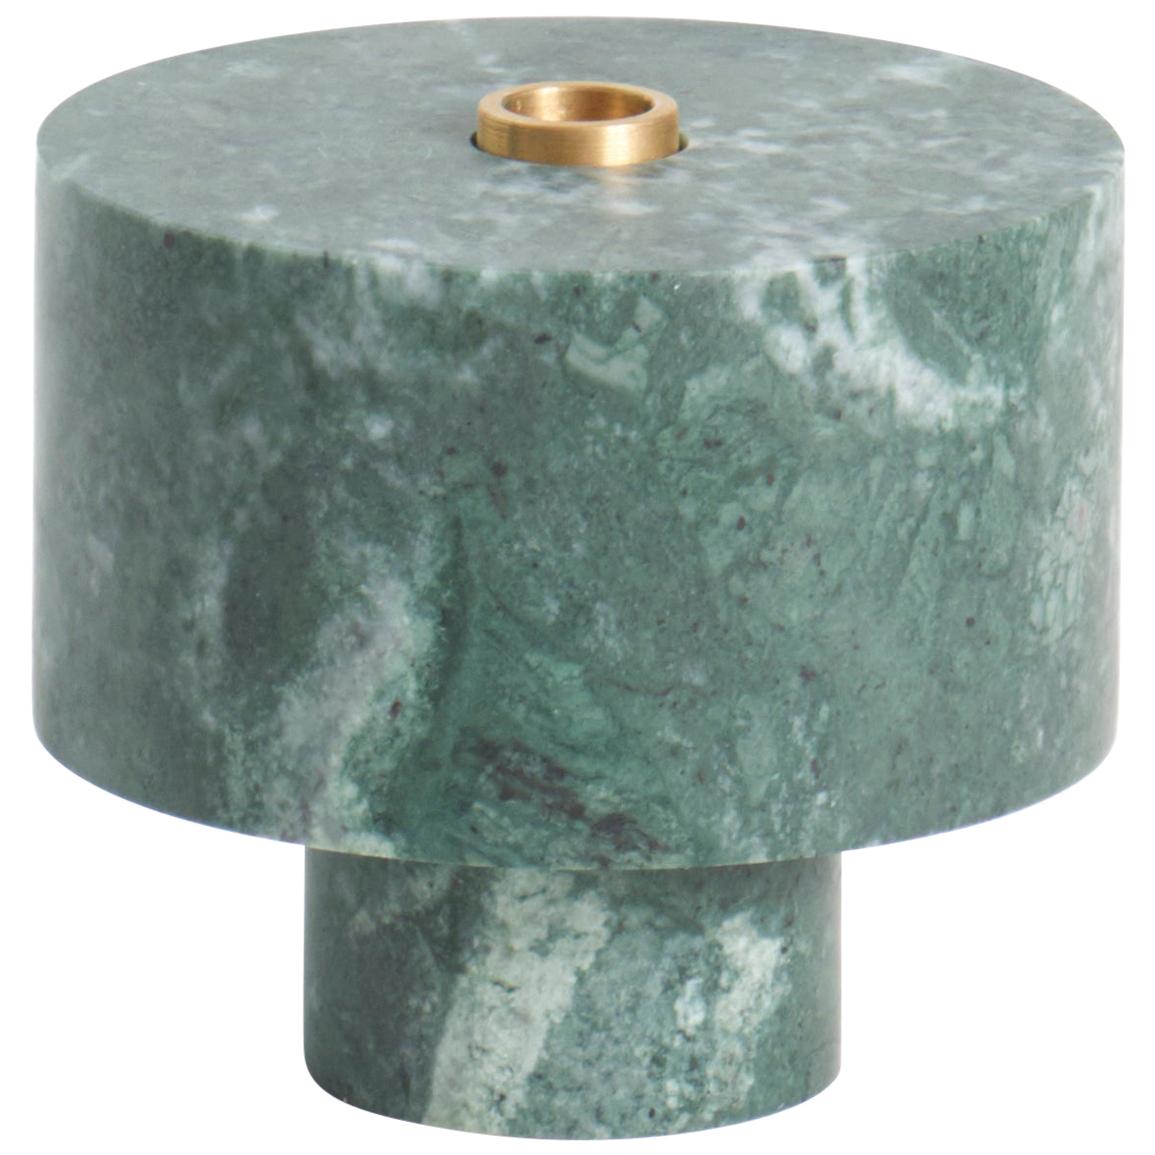 New Modern candleholder in Green Marble, Creator Karen Chekerdjian Stock For Sale